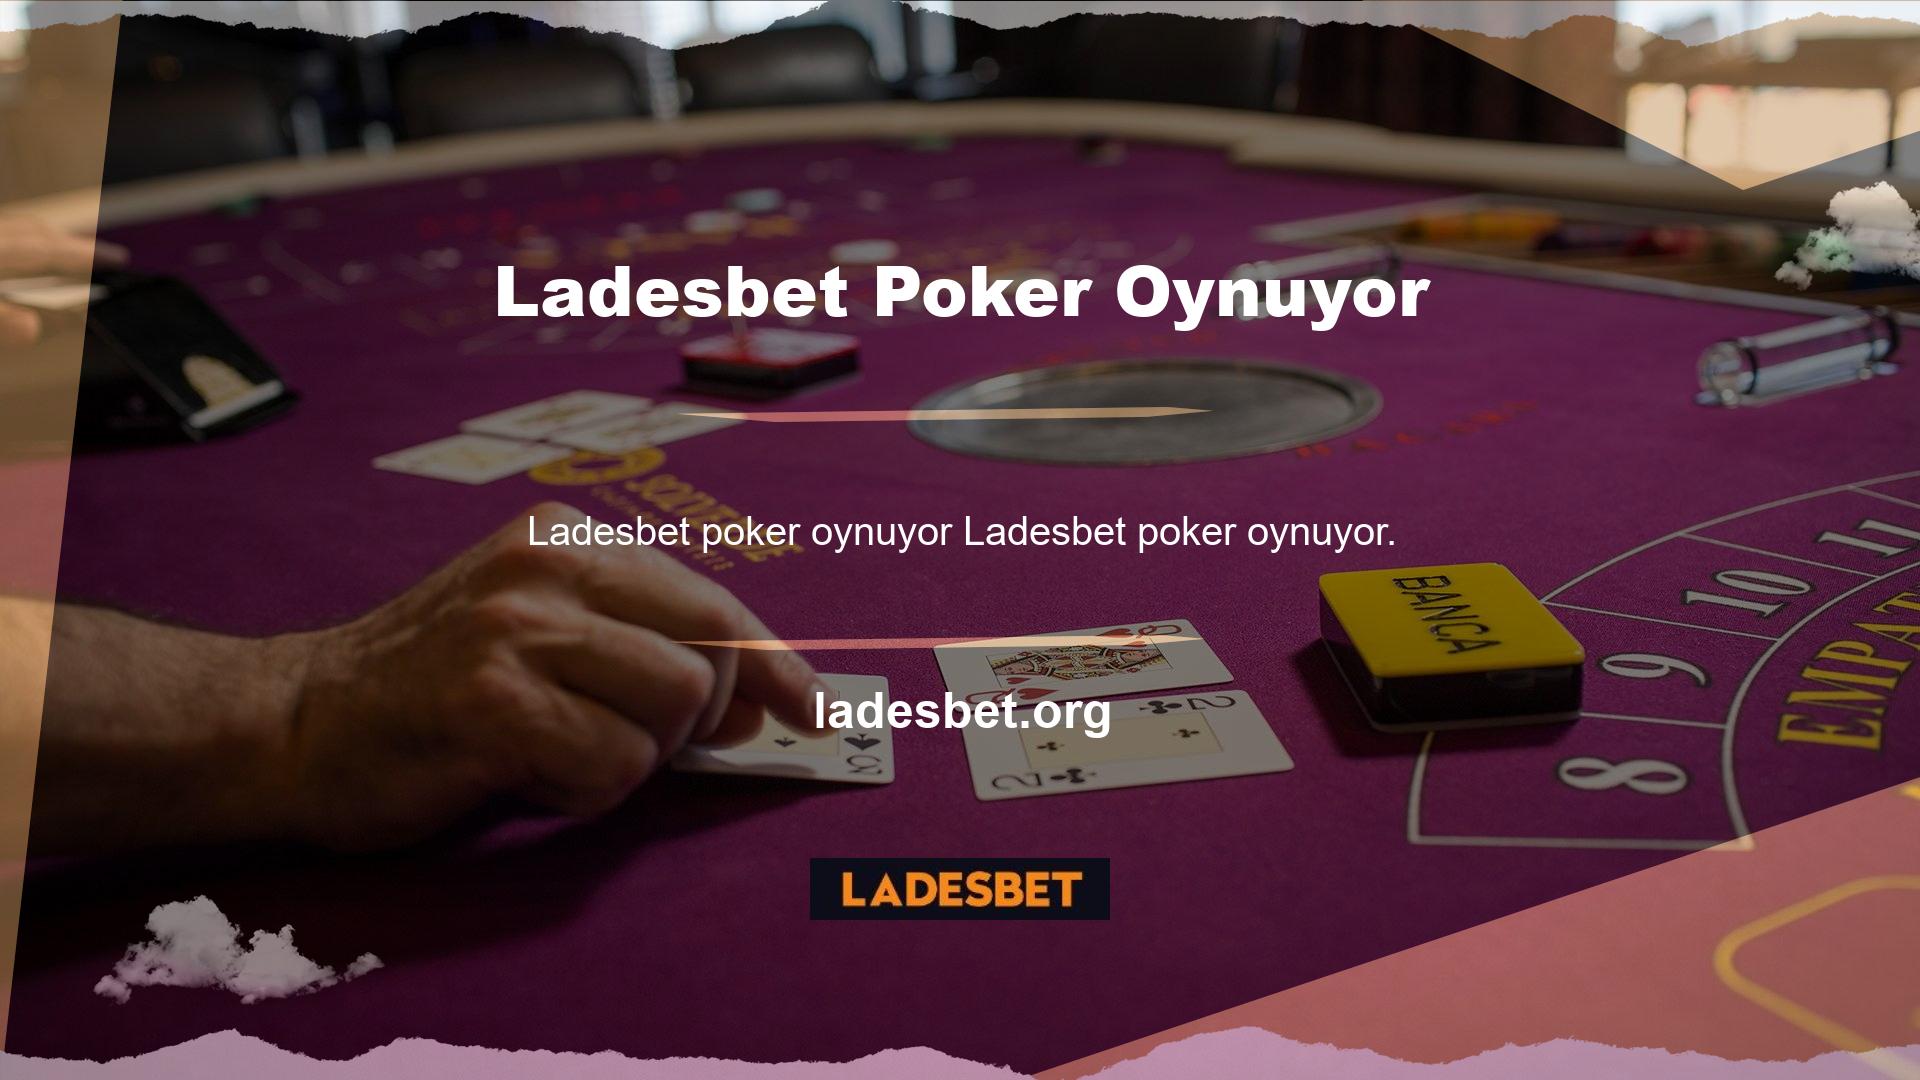 Poker sahnesinde Ladesbet Poker oynadığınızda hızlı sistemleri öğrenirken her zaman aktif kalma fırsatına sahip olursunuz